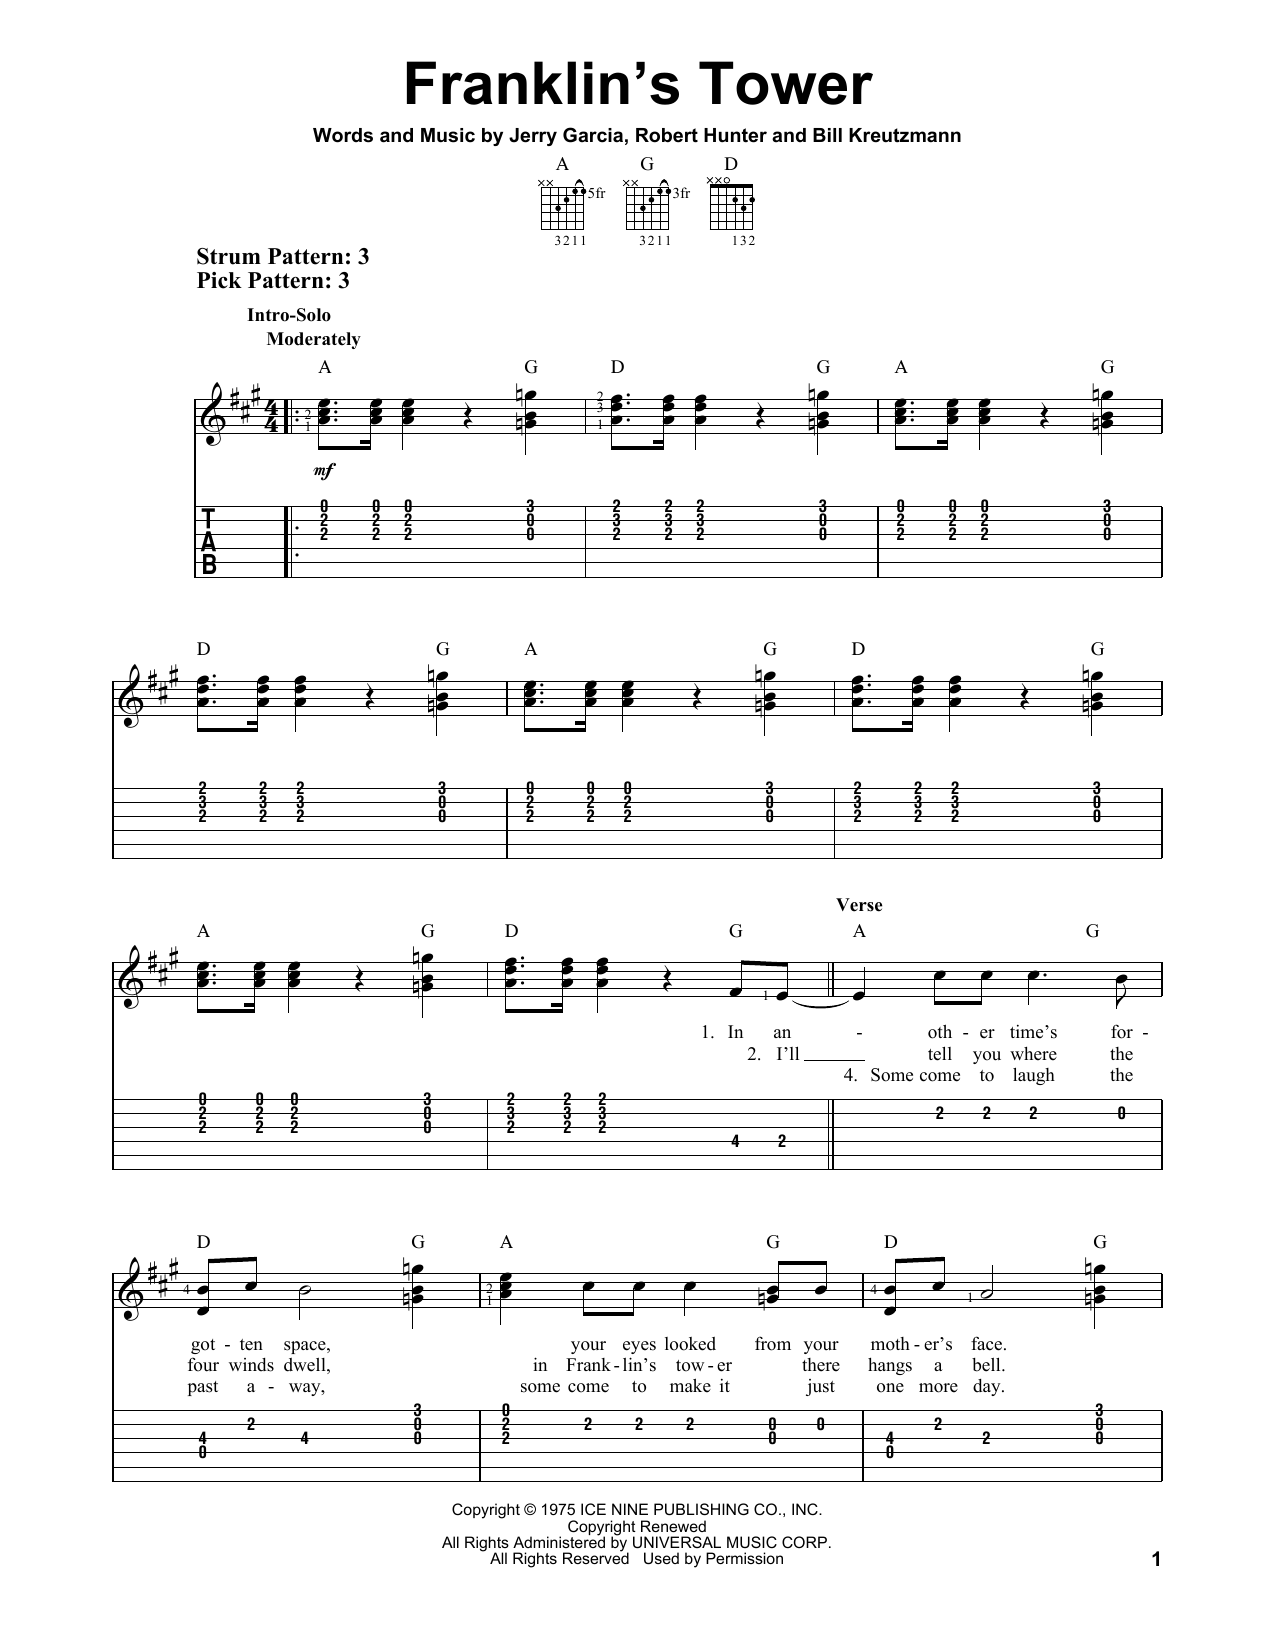 Grateful Dead Franklin's Tower Sheet Music Notes & Chords for Ukulele - Download or Print PDF